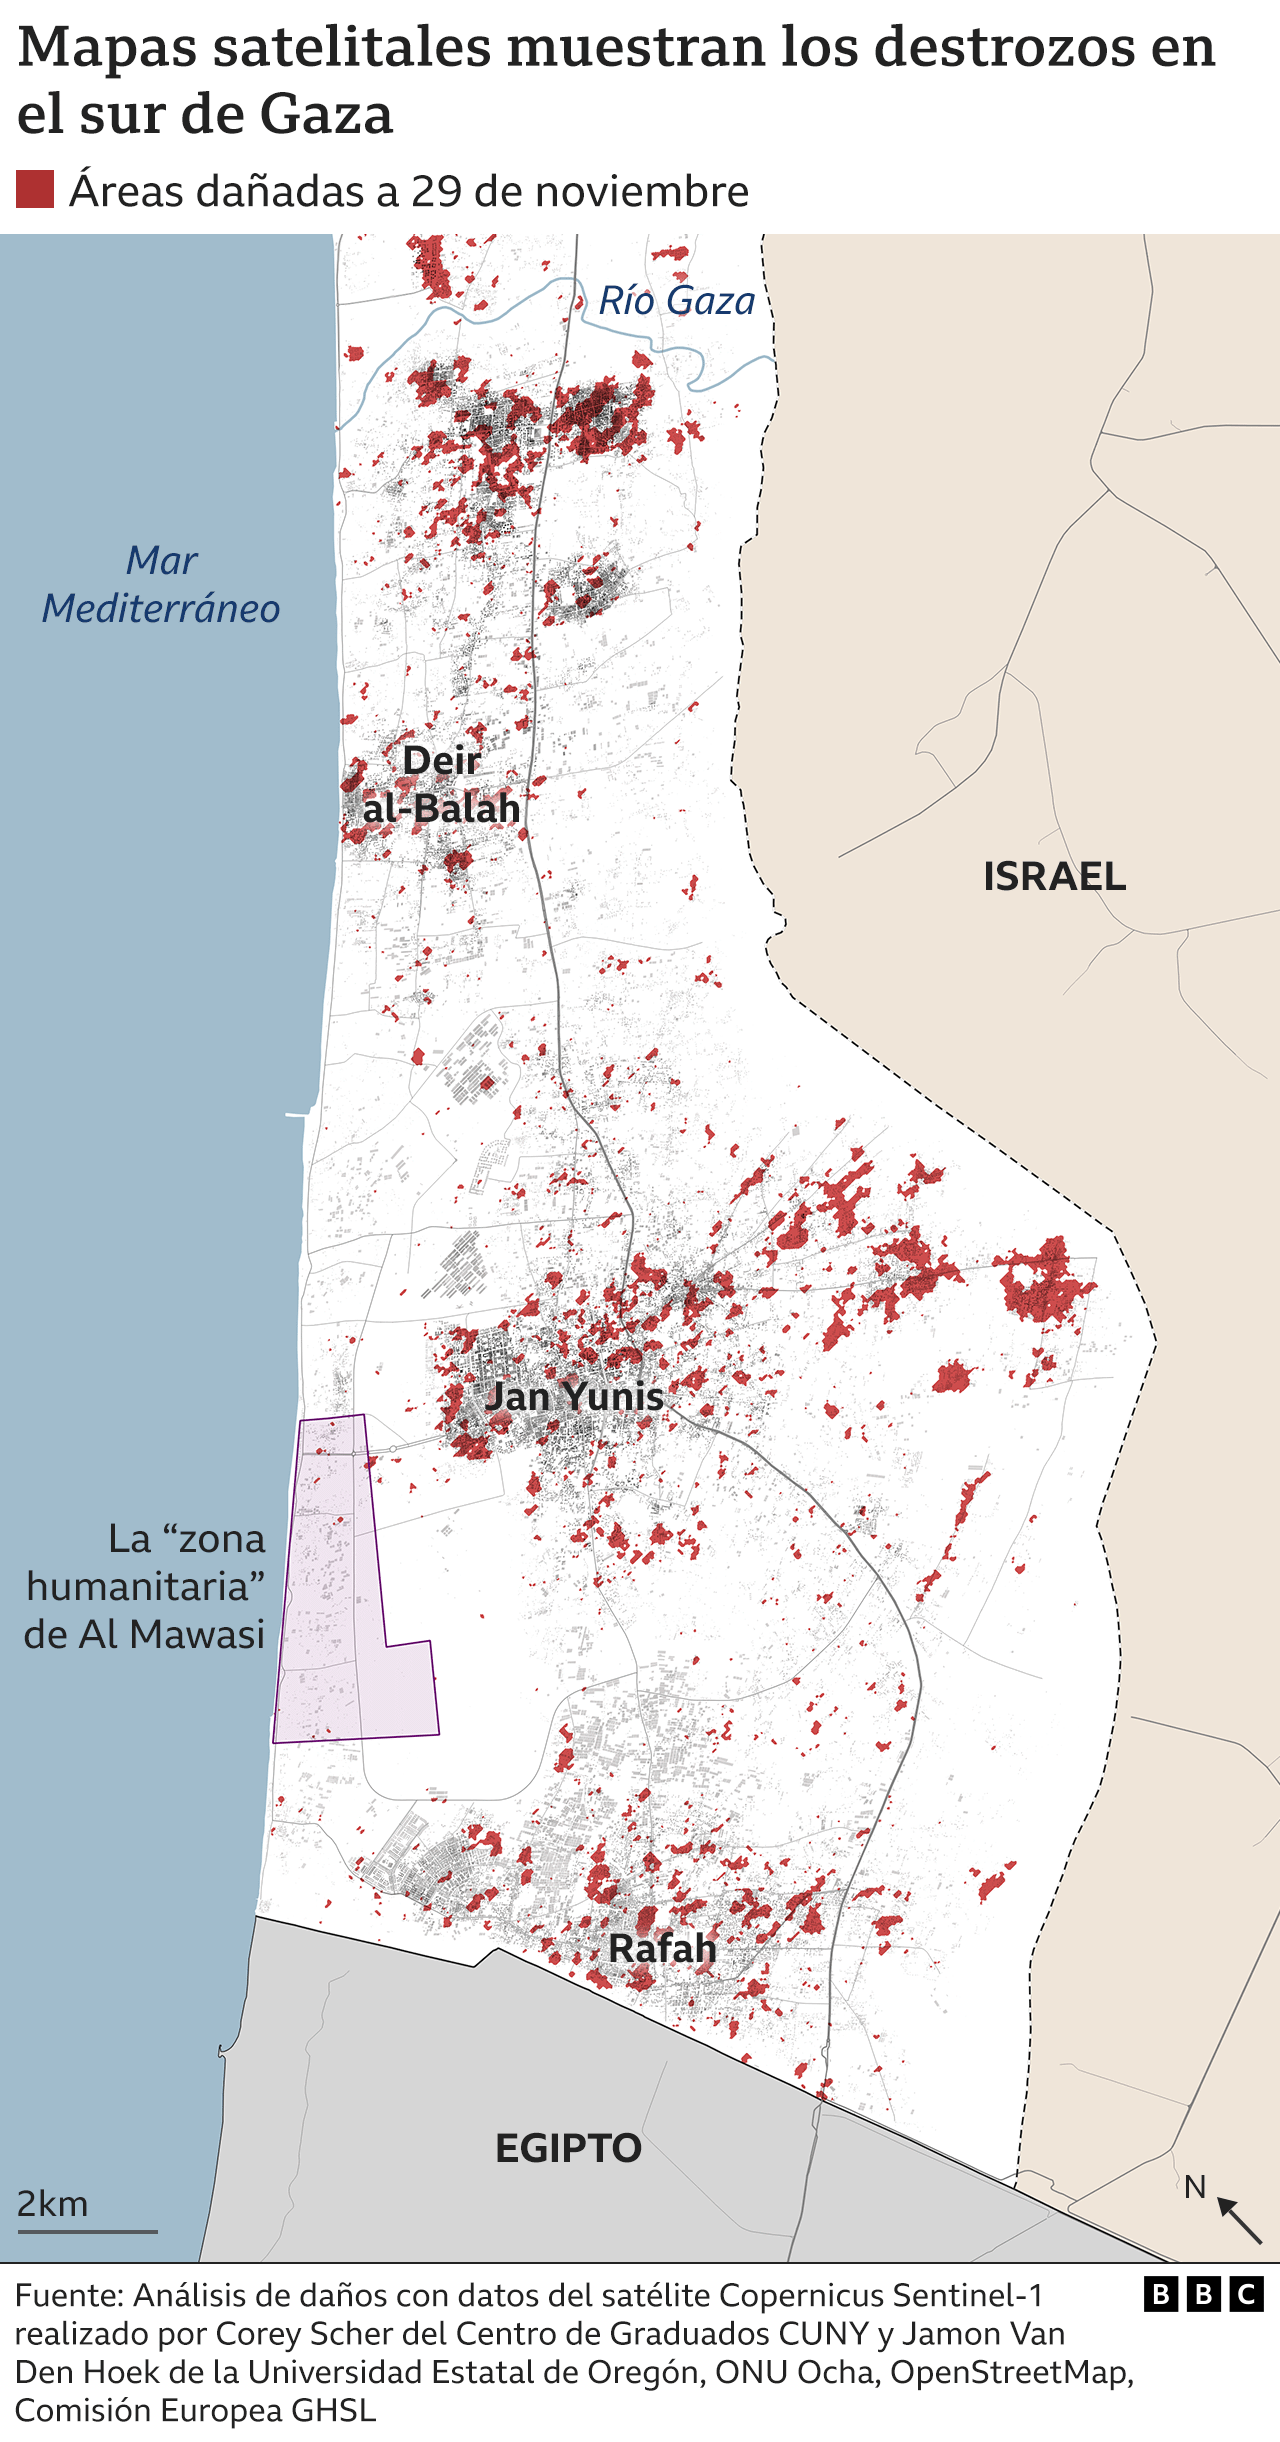 Un mapa muestra los daños en el sur de Gaza hasta el 29 de noviembre mediante análisis por satélite